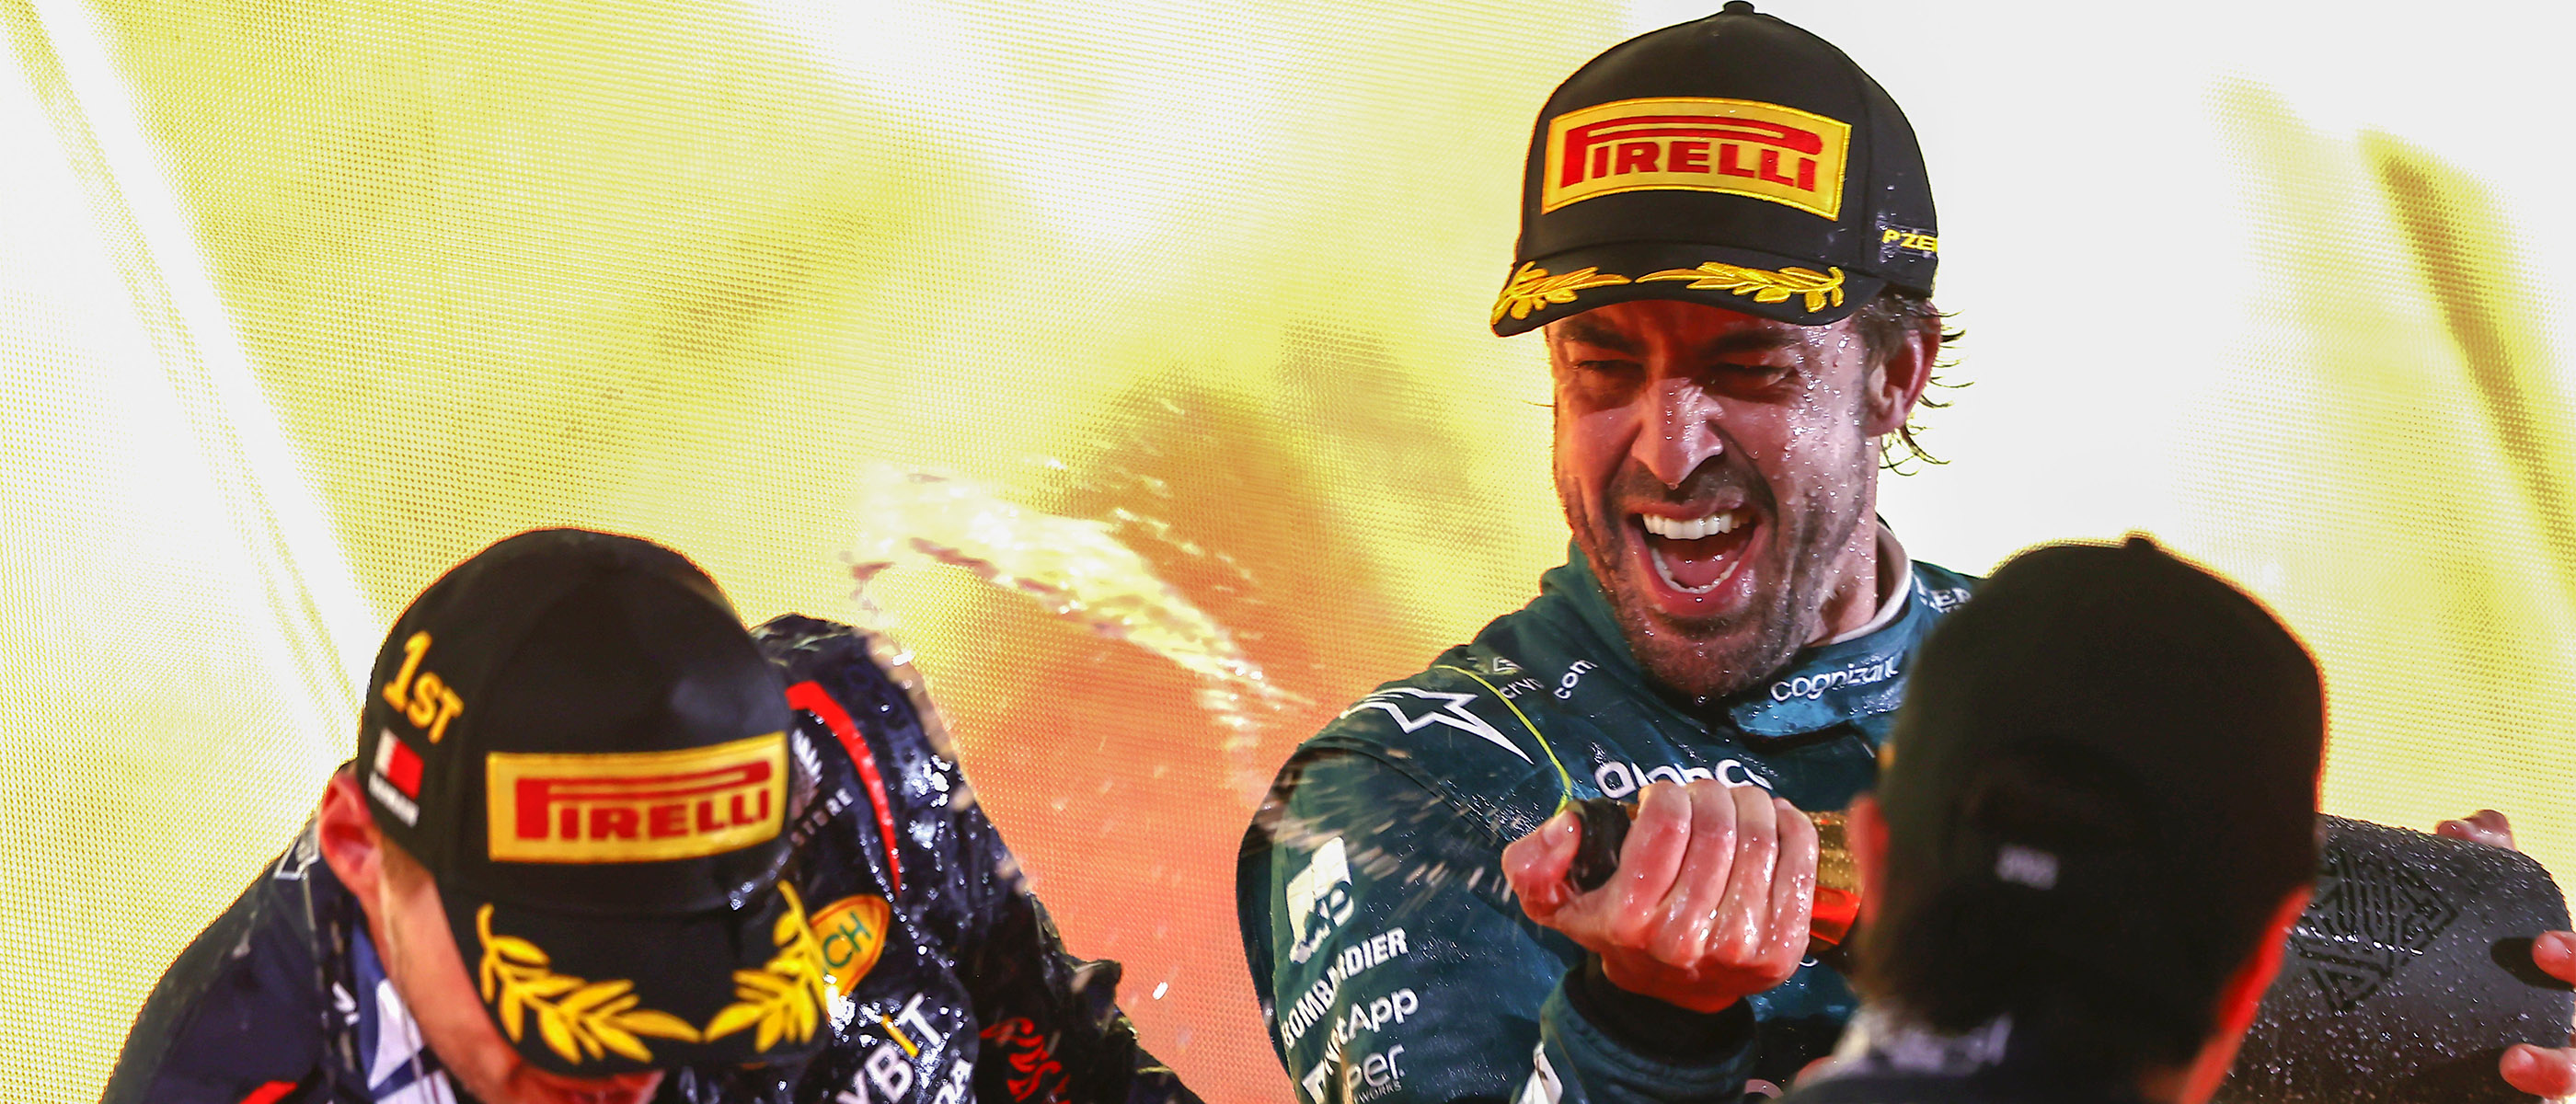 La tecnología ha dado motivos de celebración a Fernando Alonso. Foto: Aston Martin Racing Team